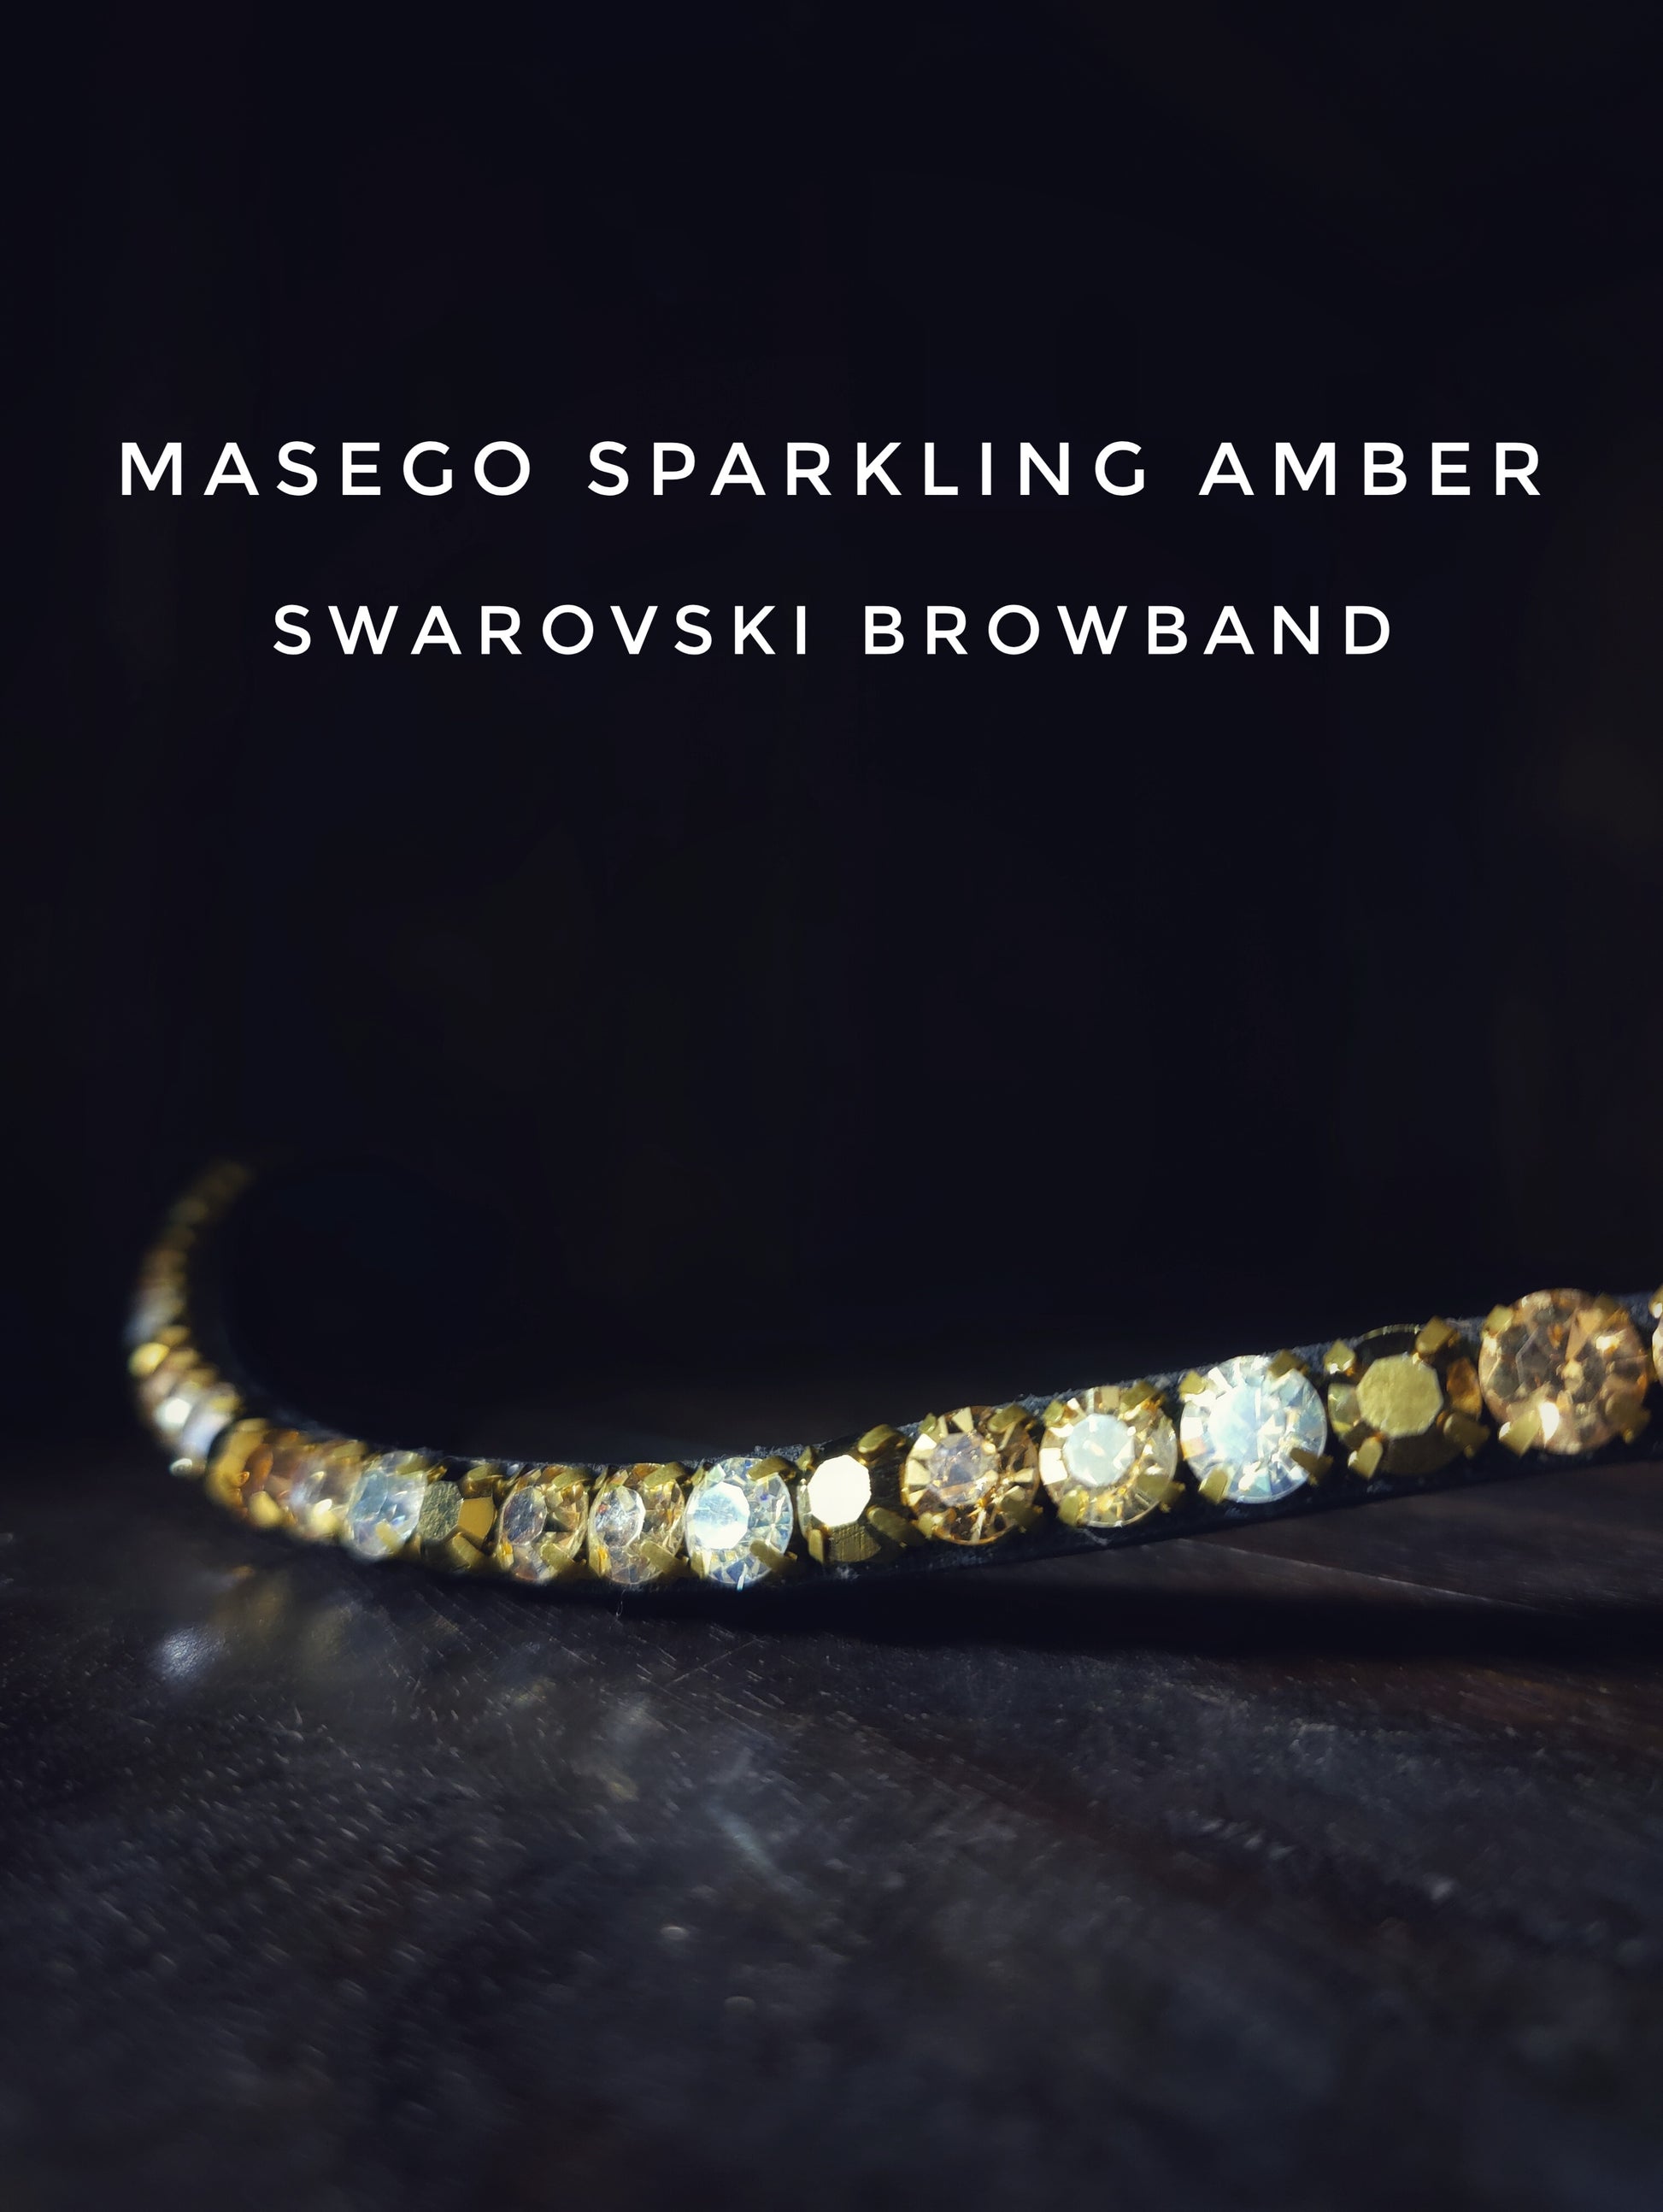 Masego Sparkling amber - MASEGO horsewear